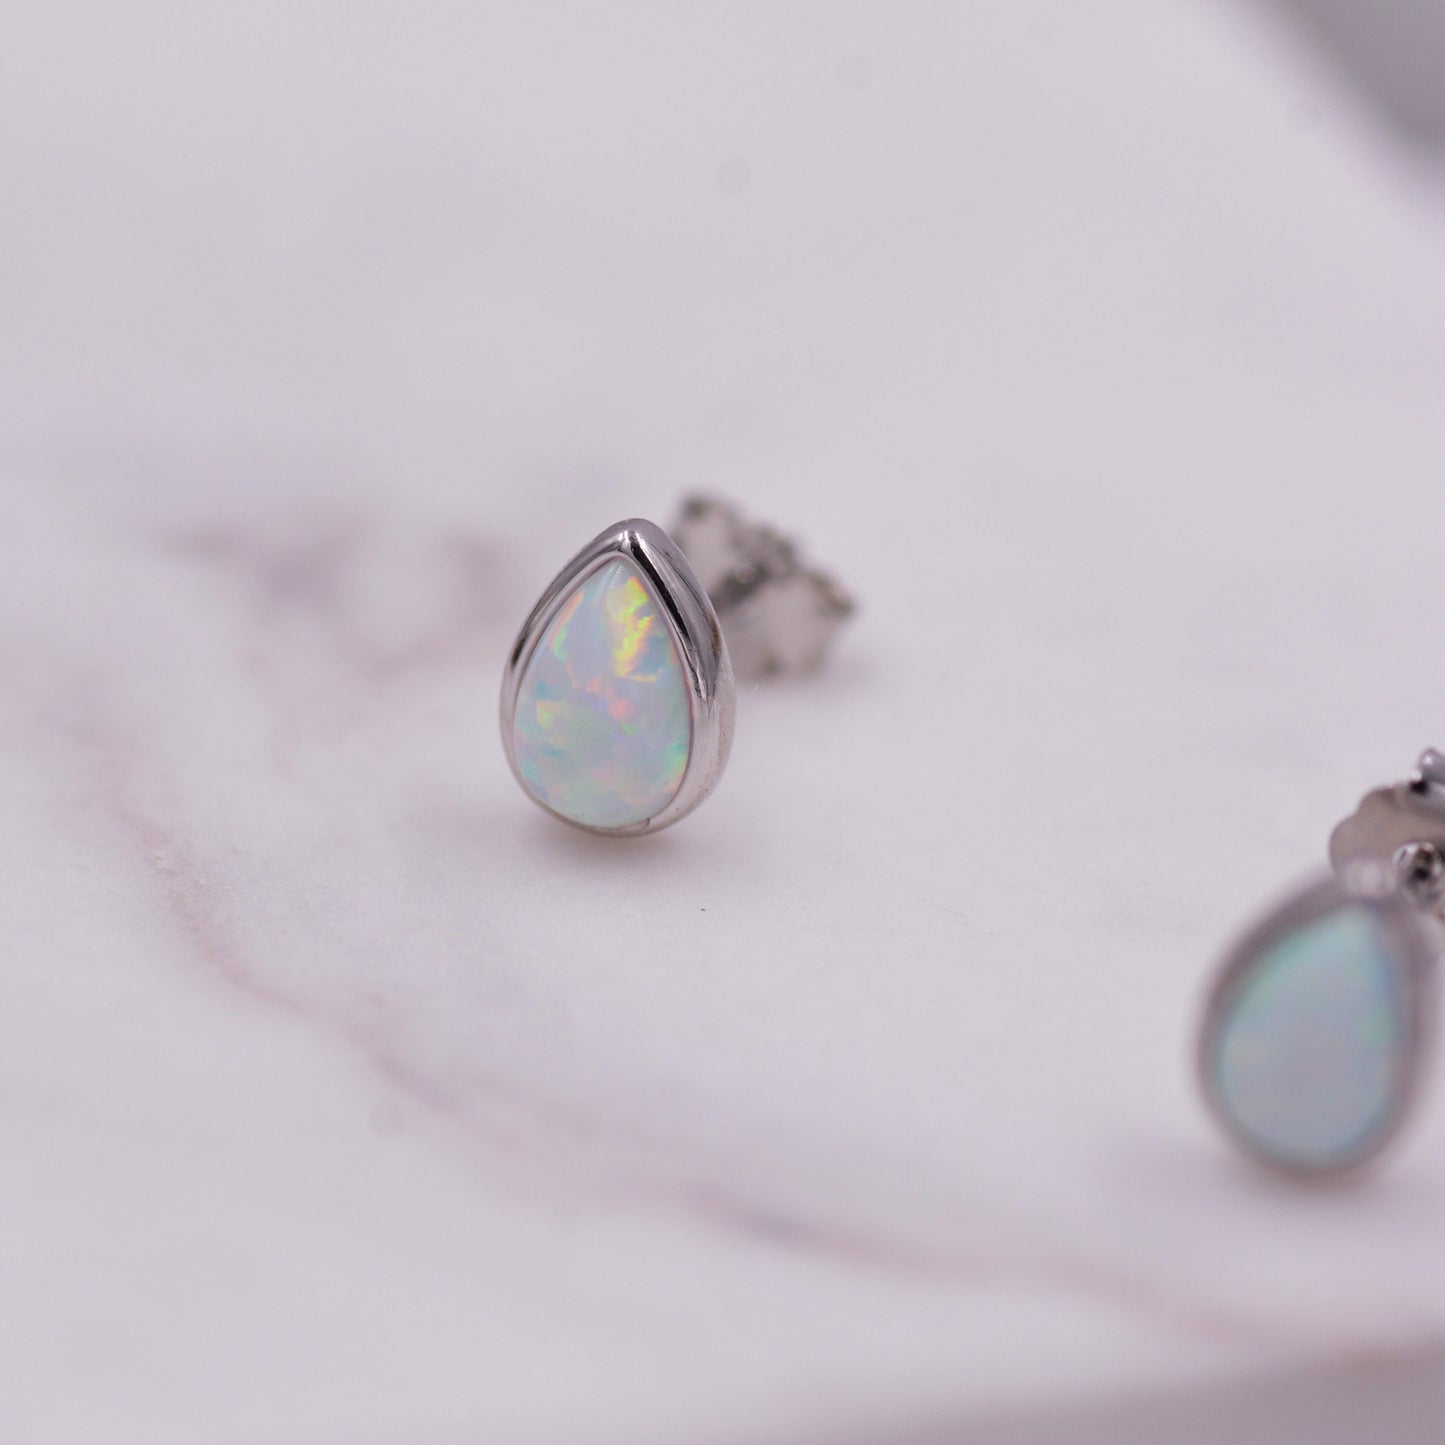 Opal Droplet Stud Earrings in Sterling Silver, Blue or White, Teardrop Opal, Pear Cut Opal Semi-precious Jewellery  R99